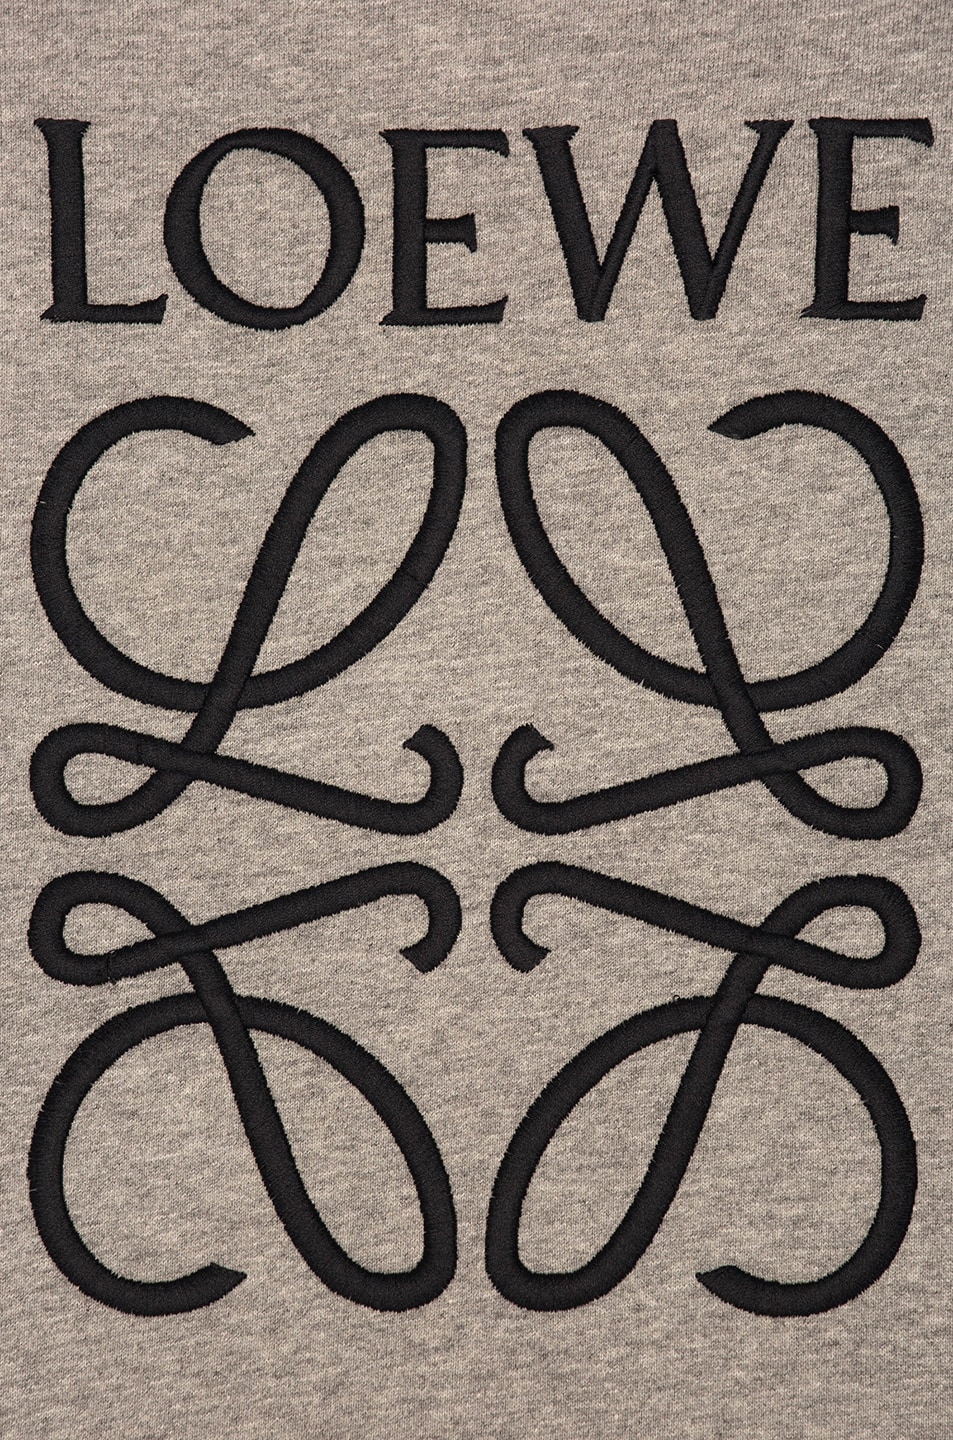 罗意威logo手机壁纸图片